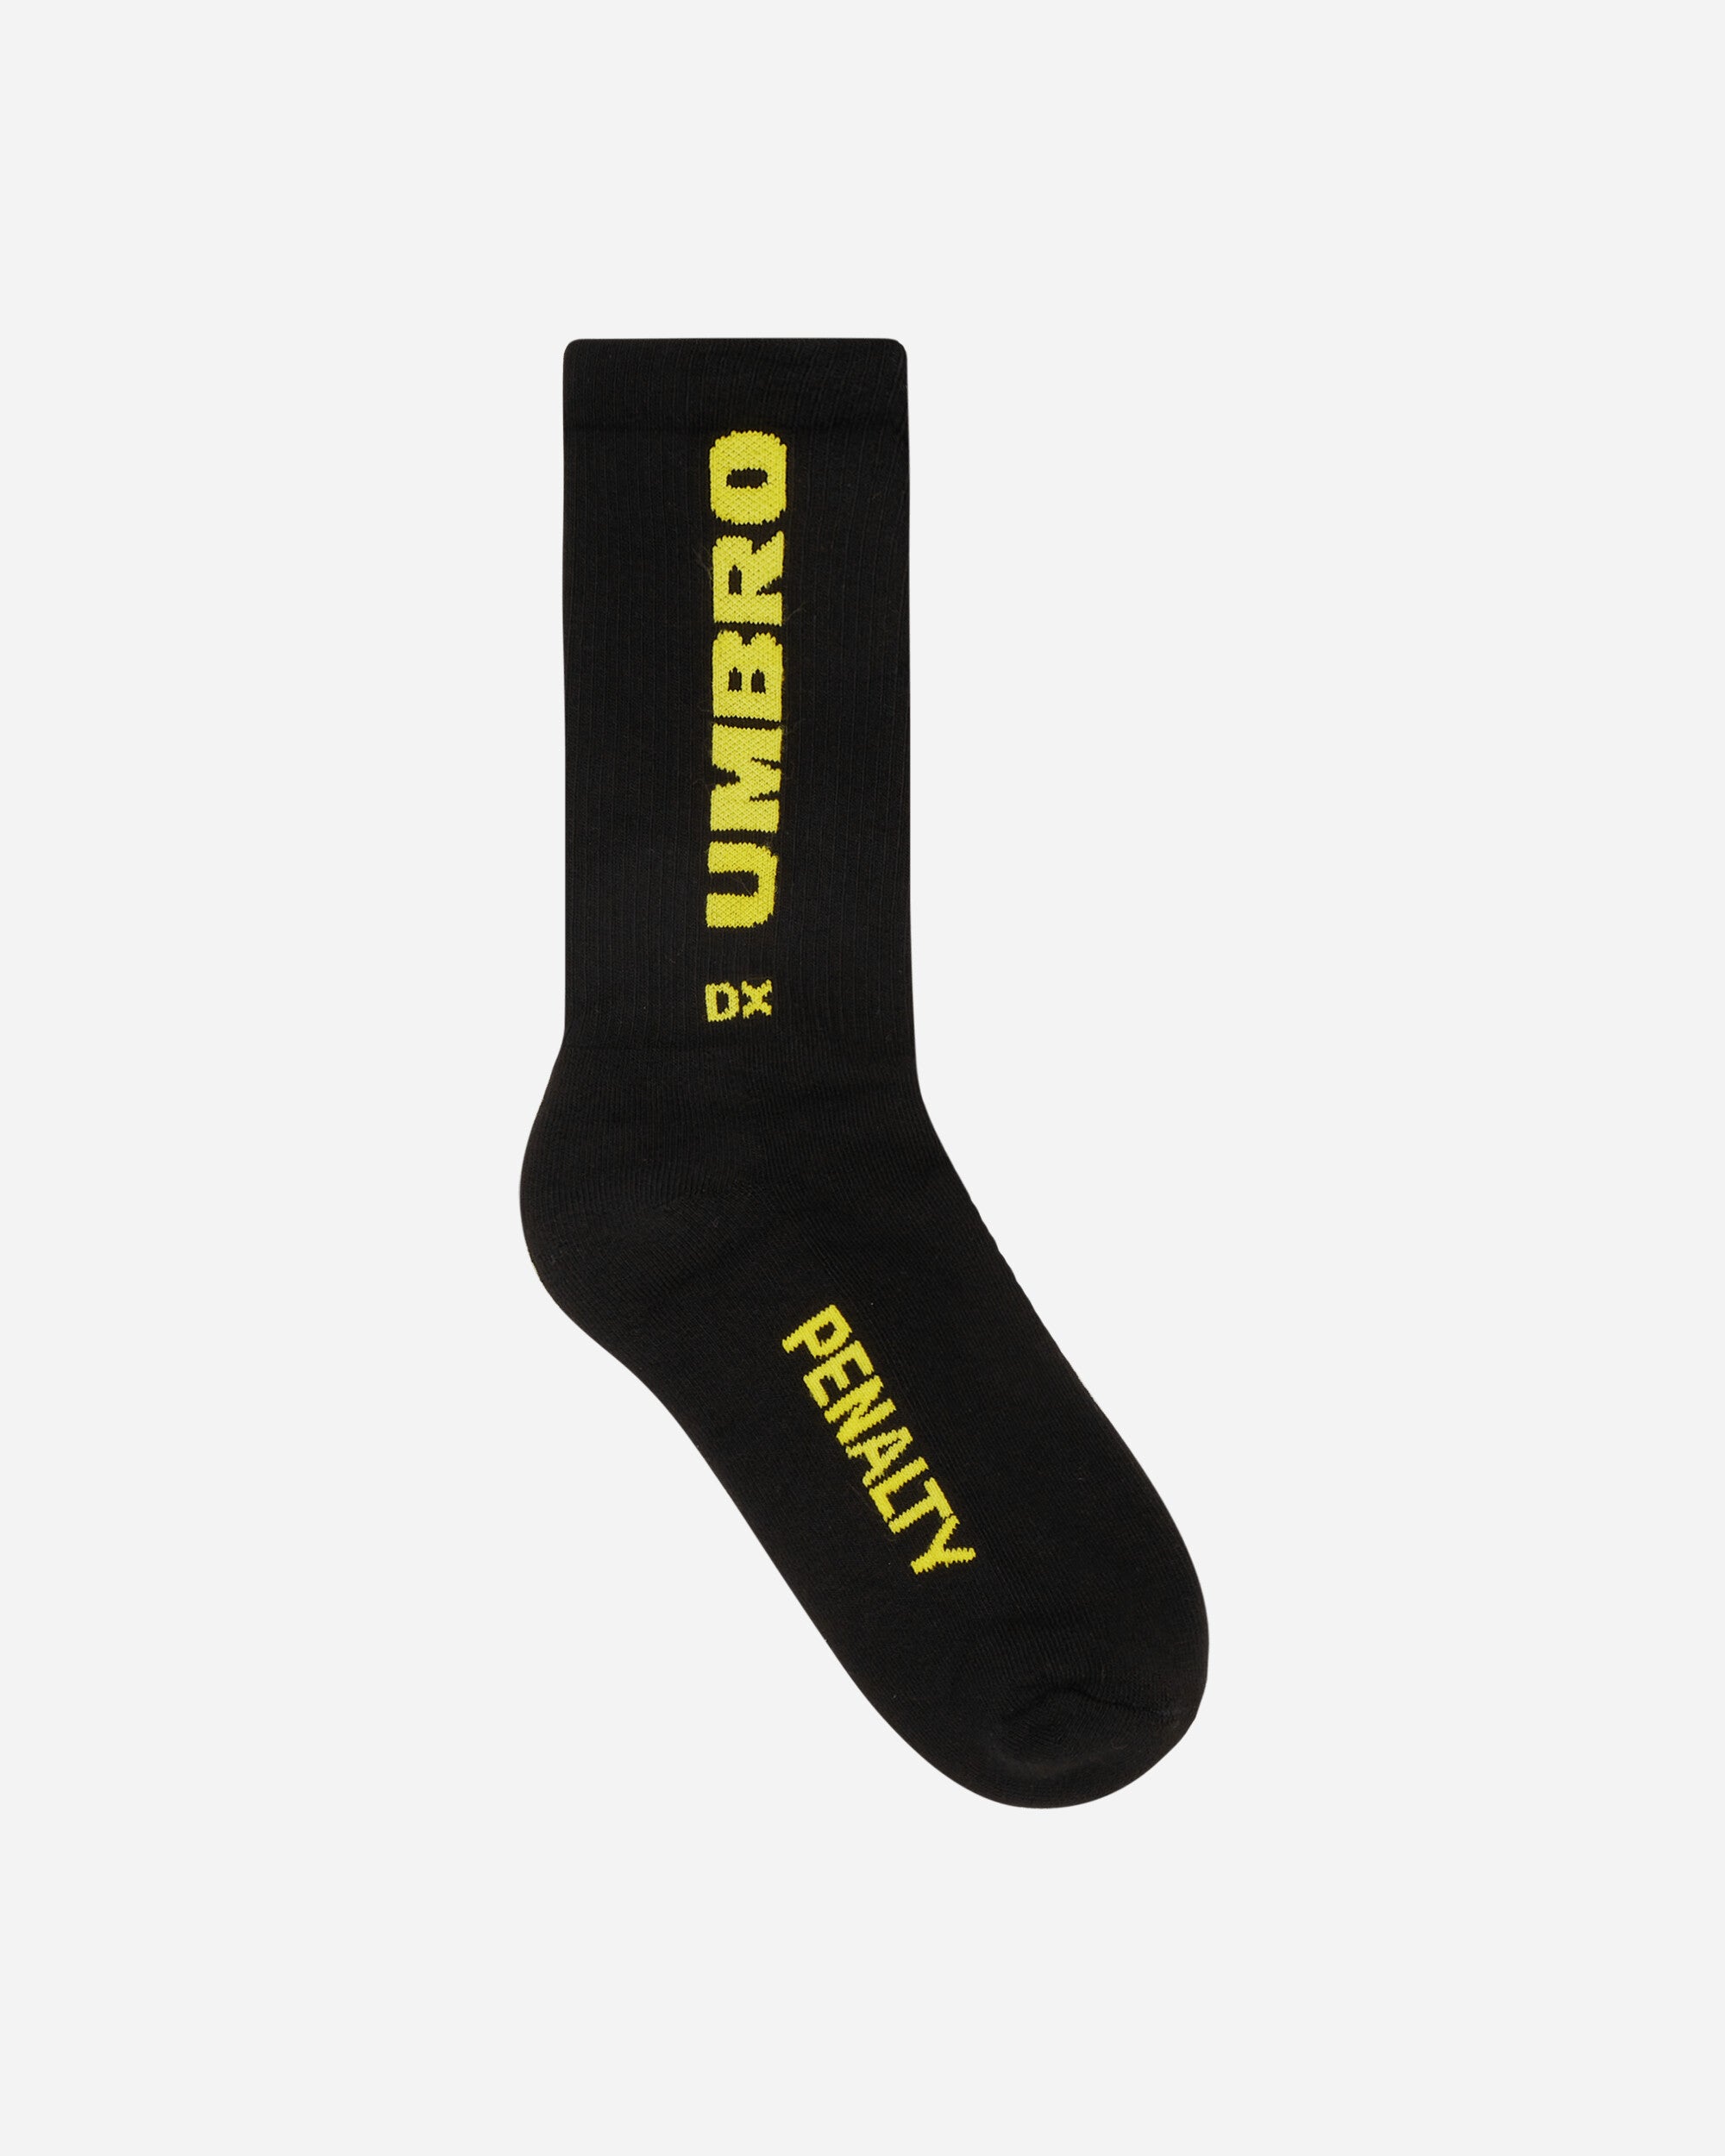 Short Socks Black / Yellow